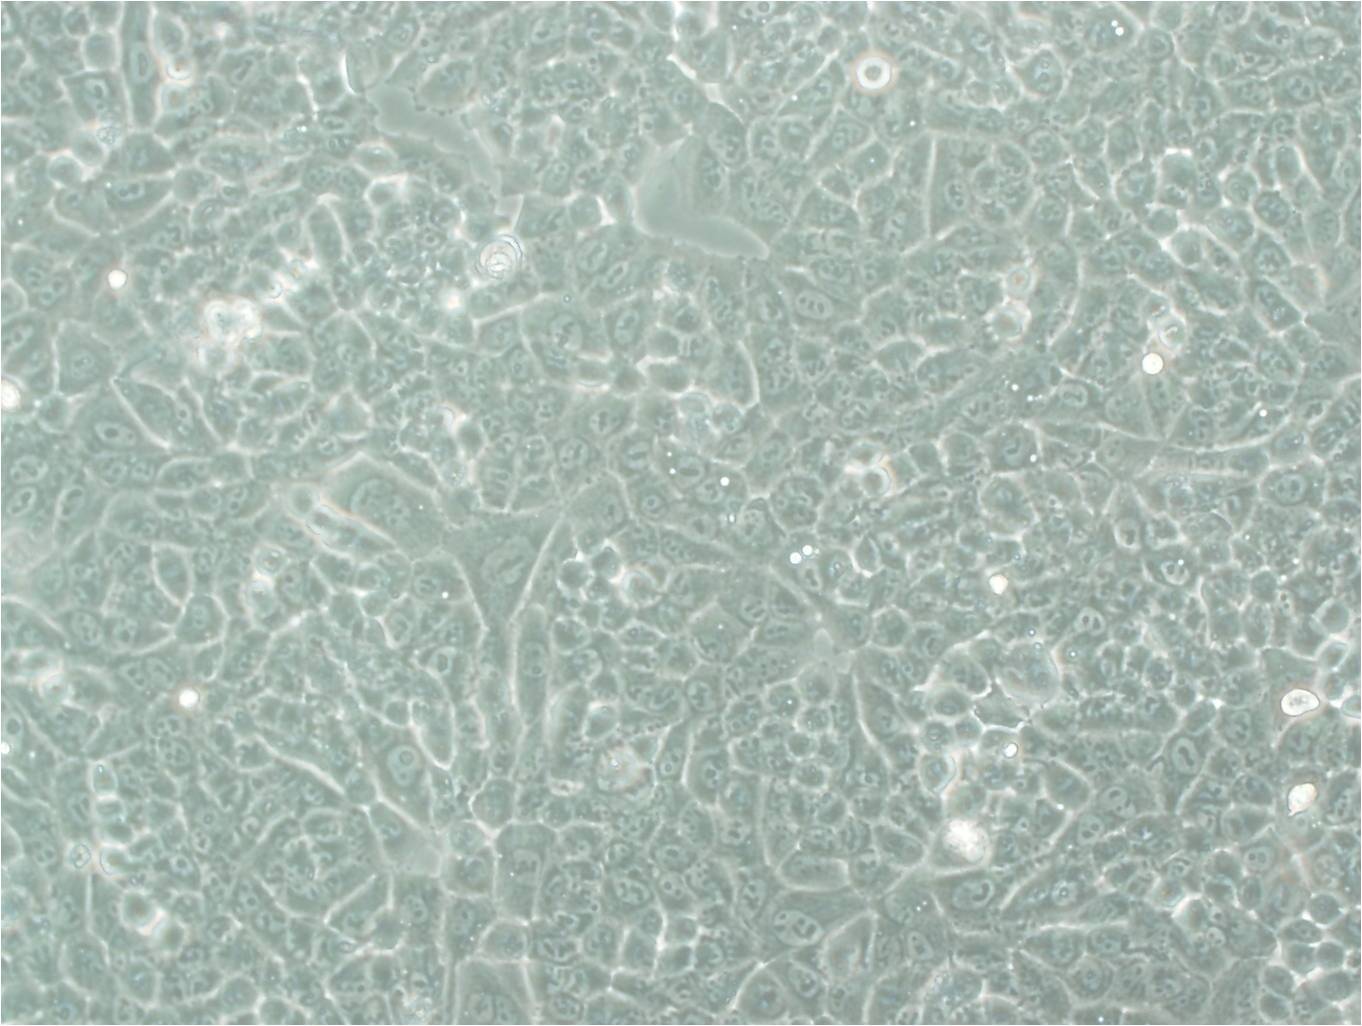 NCI-H1563 cell line人胚肺细胞系